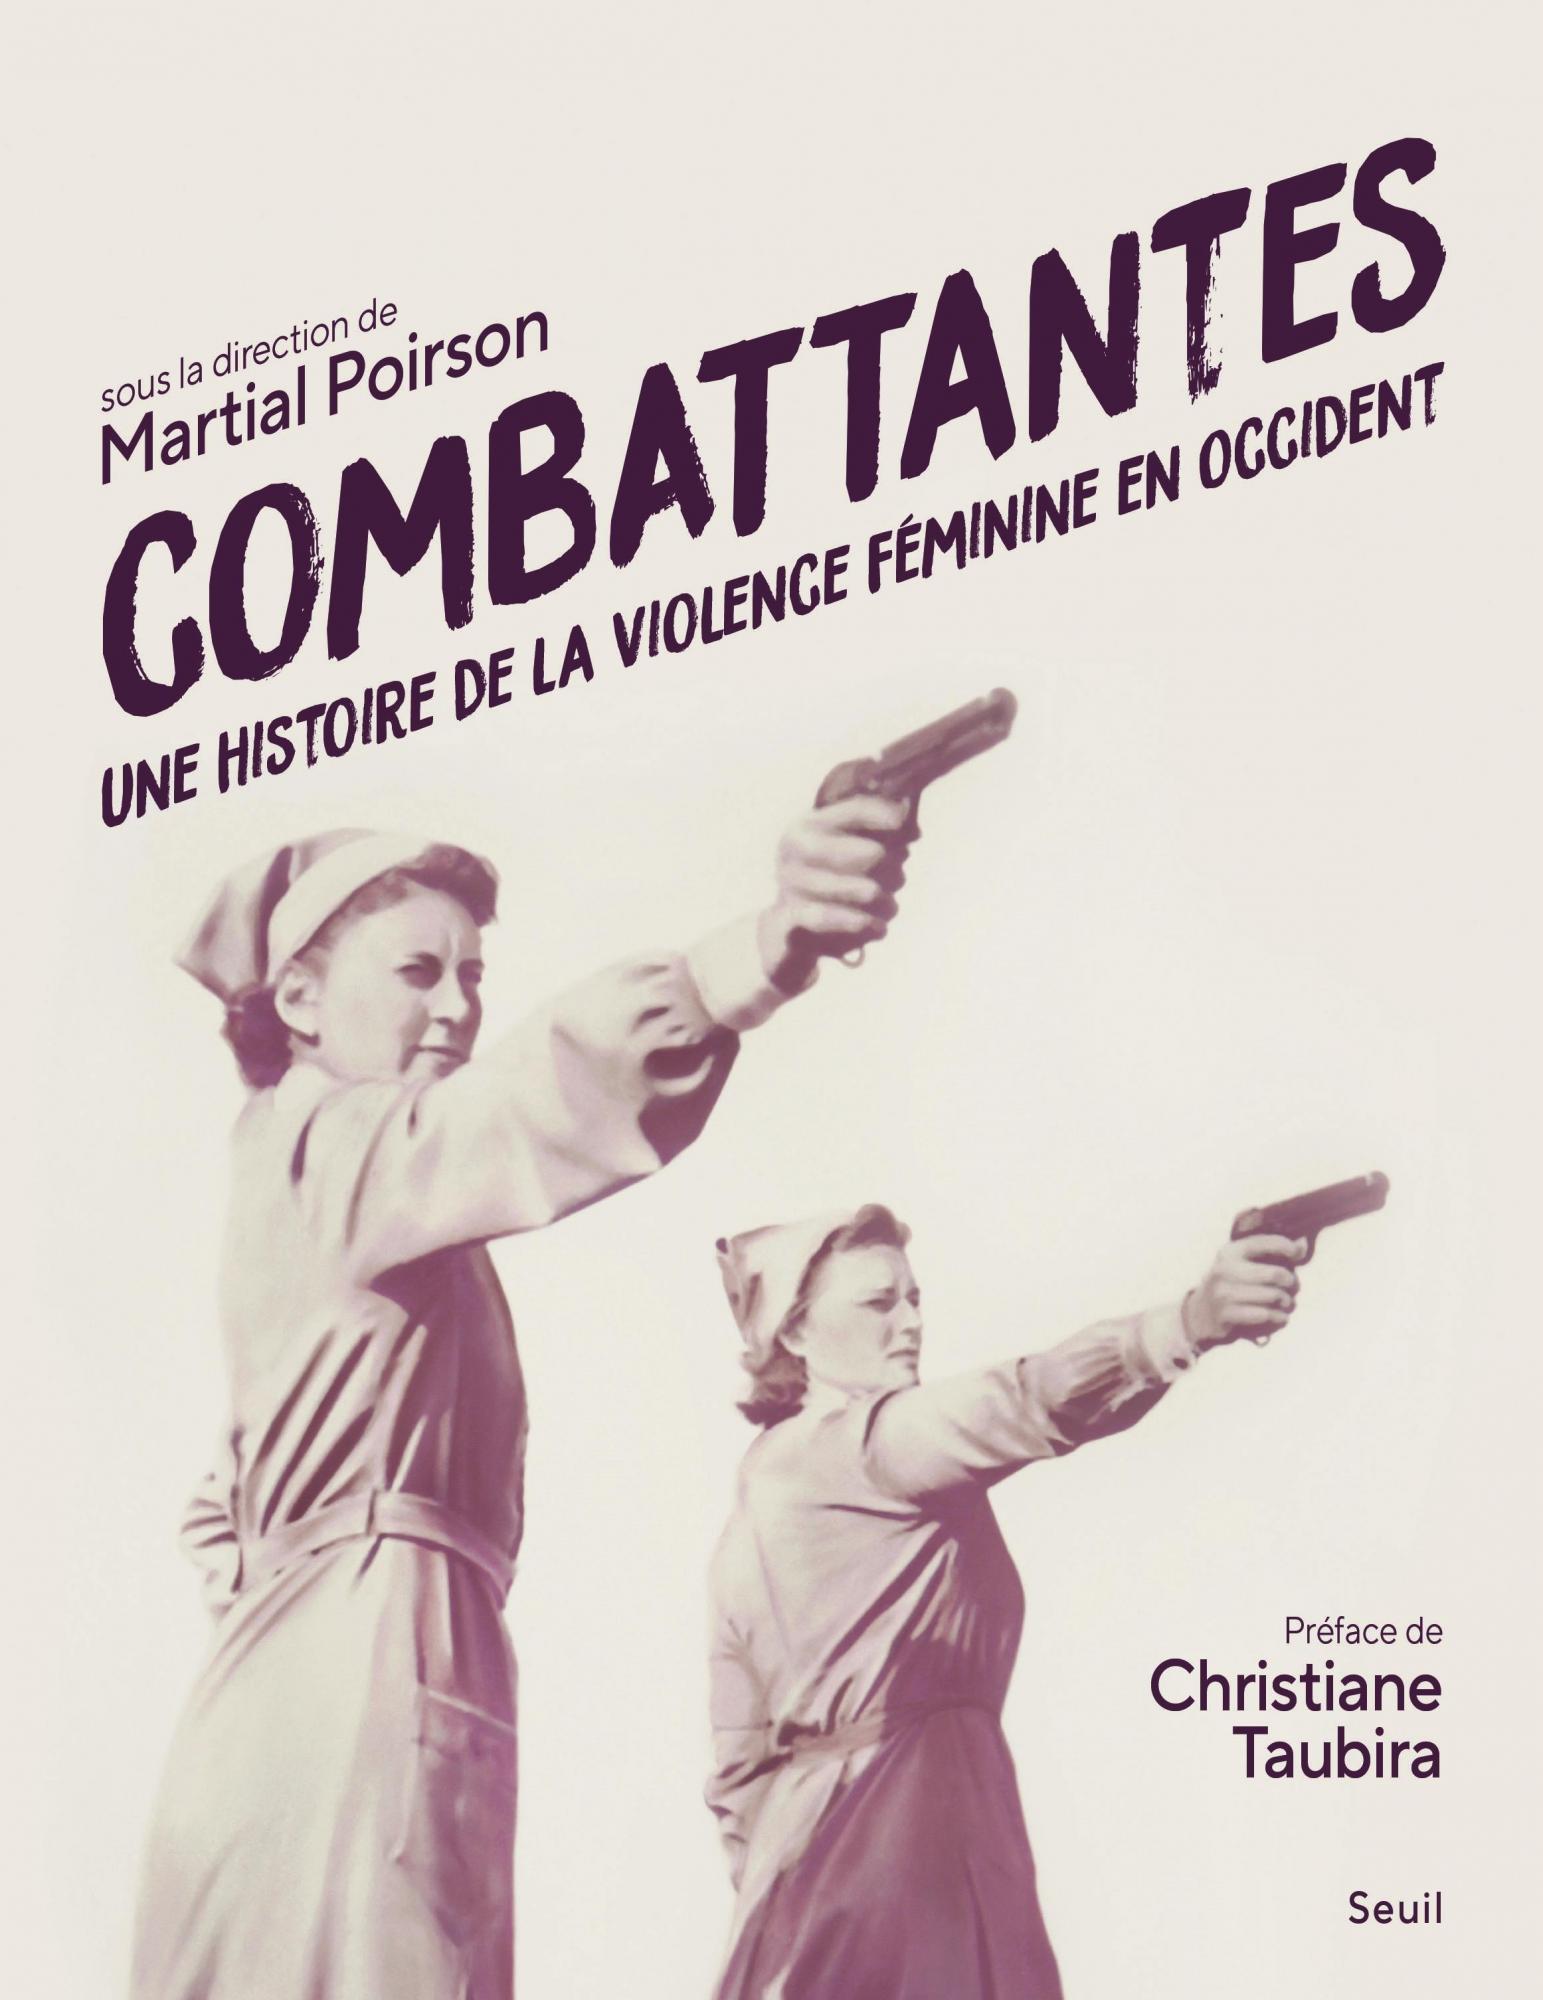 M. Poirson (dir.), Combattantes. Une histoire de la violence féminine en Occident